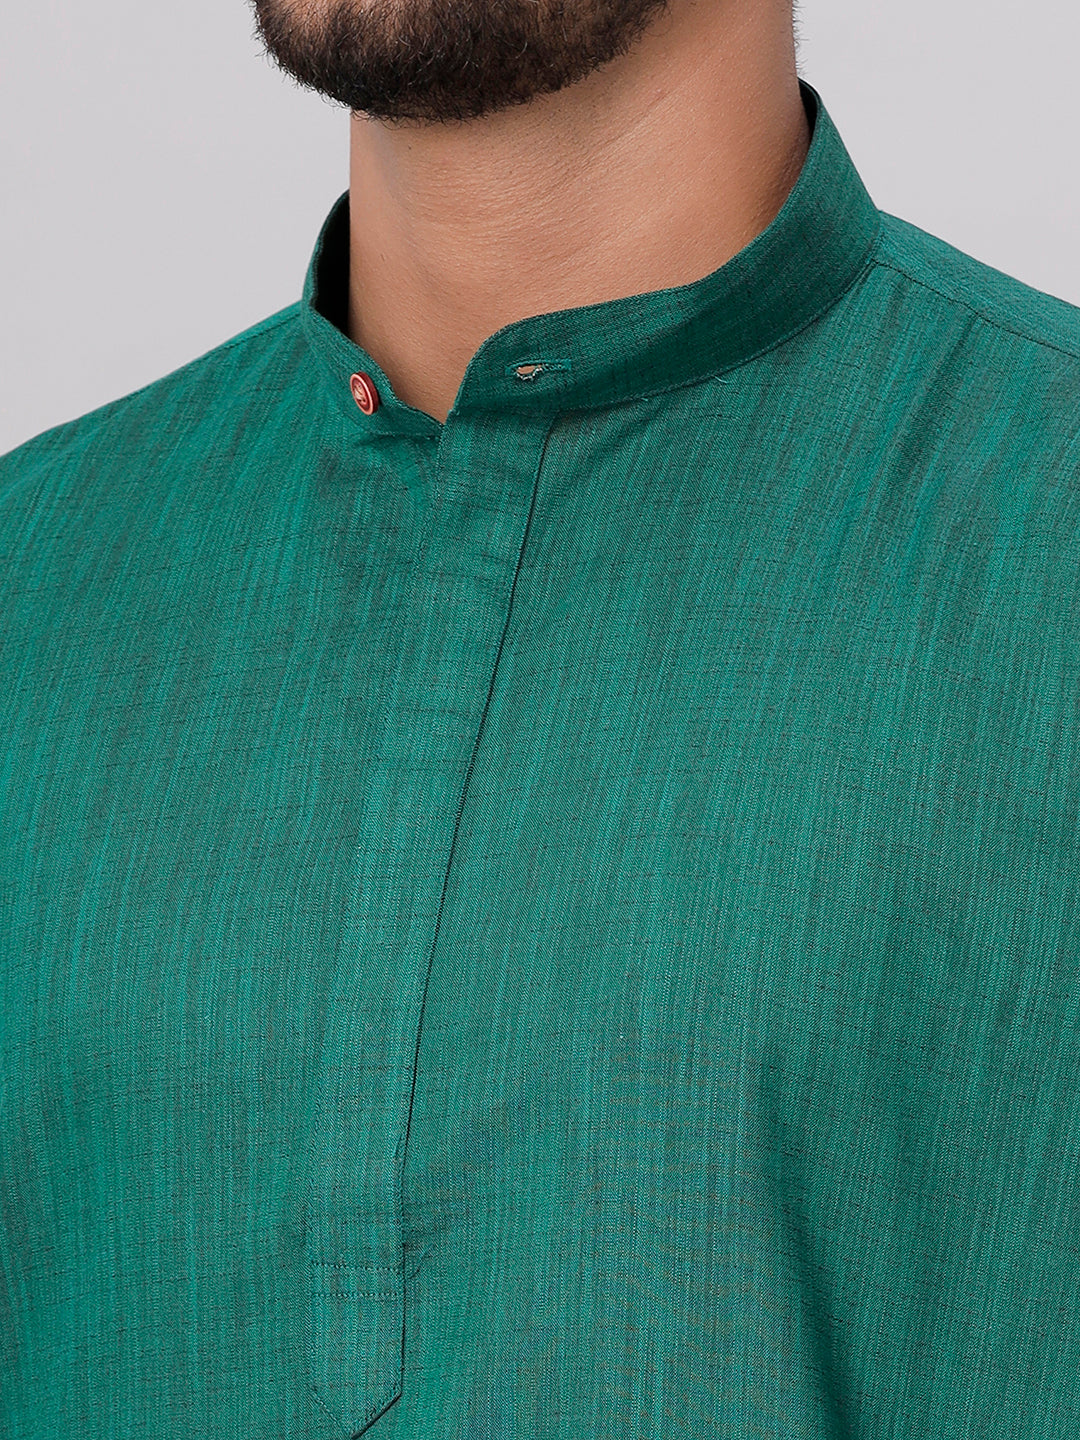 Mens Medium Length Dark Green Kurta with White Panchakacham Combo FS5-Zoom view